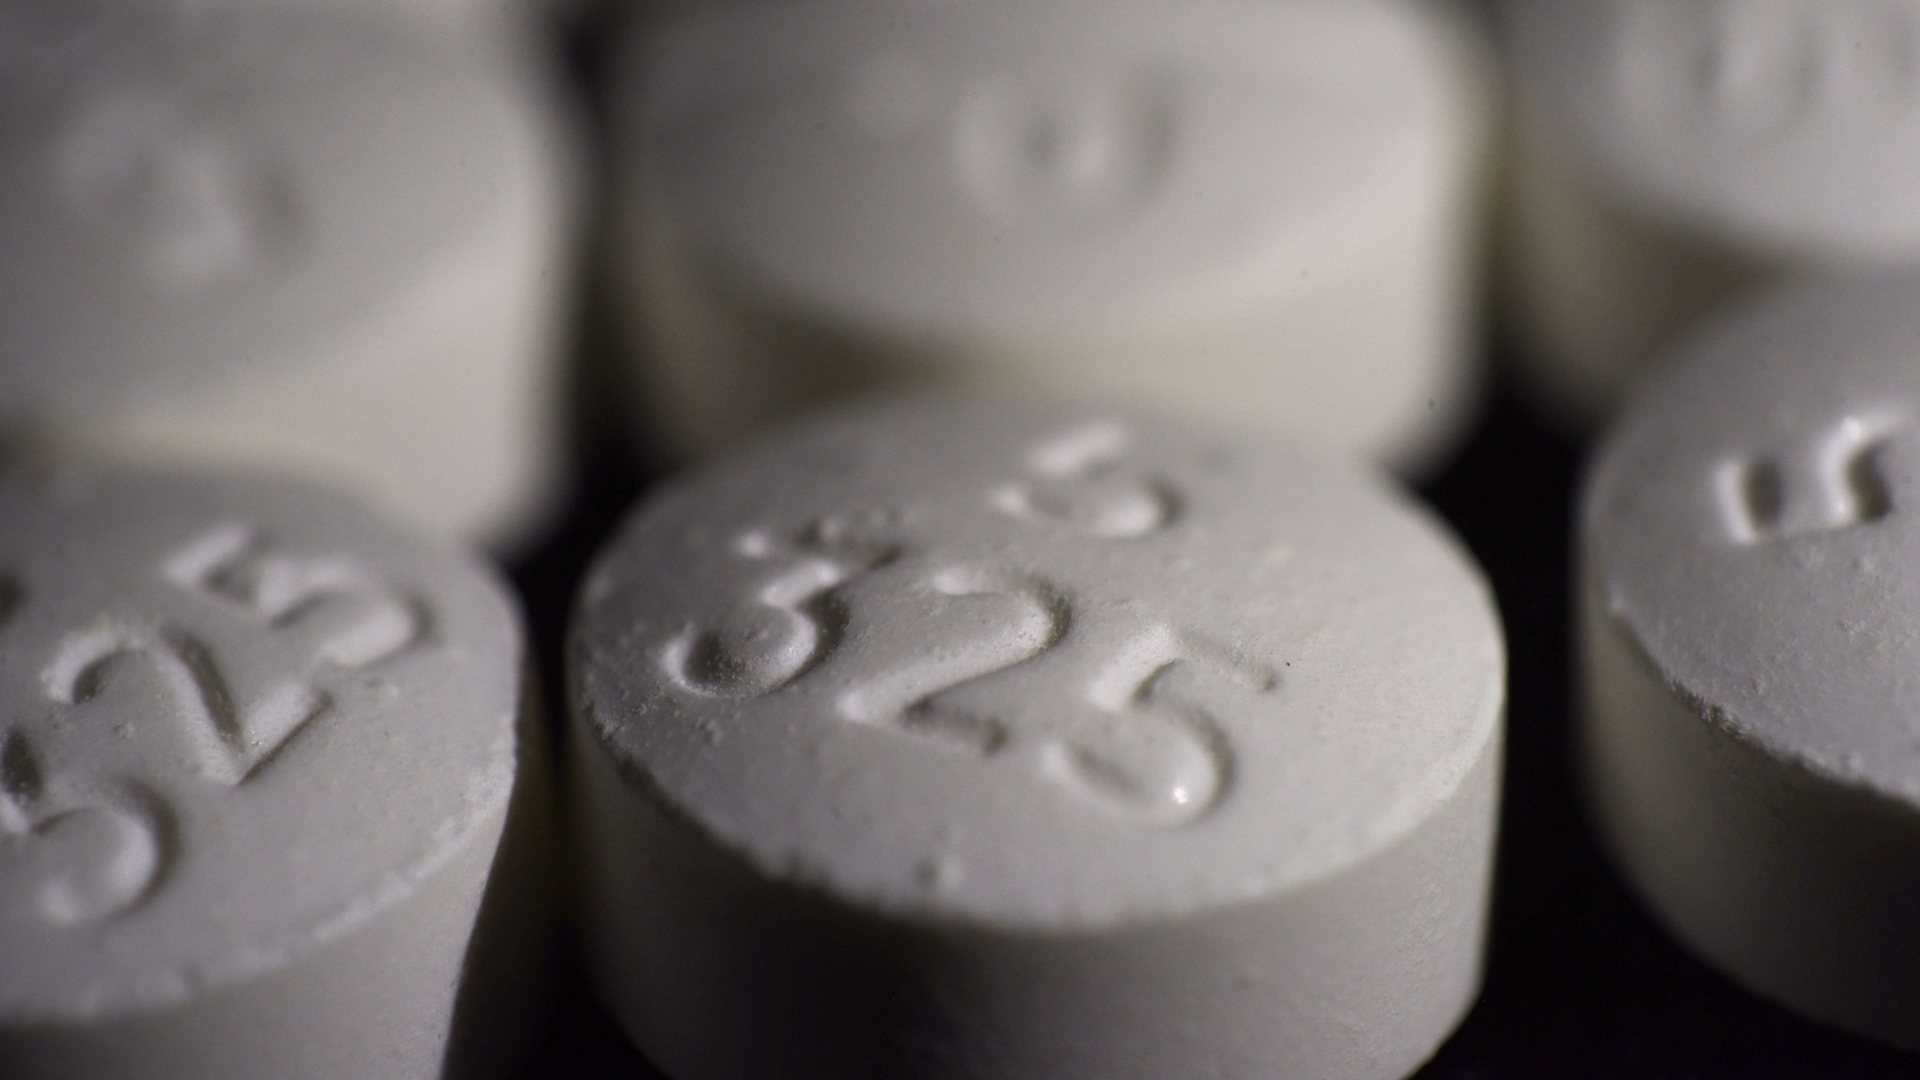 Opiodhaltige Tabletten | AP